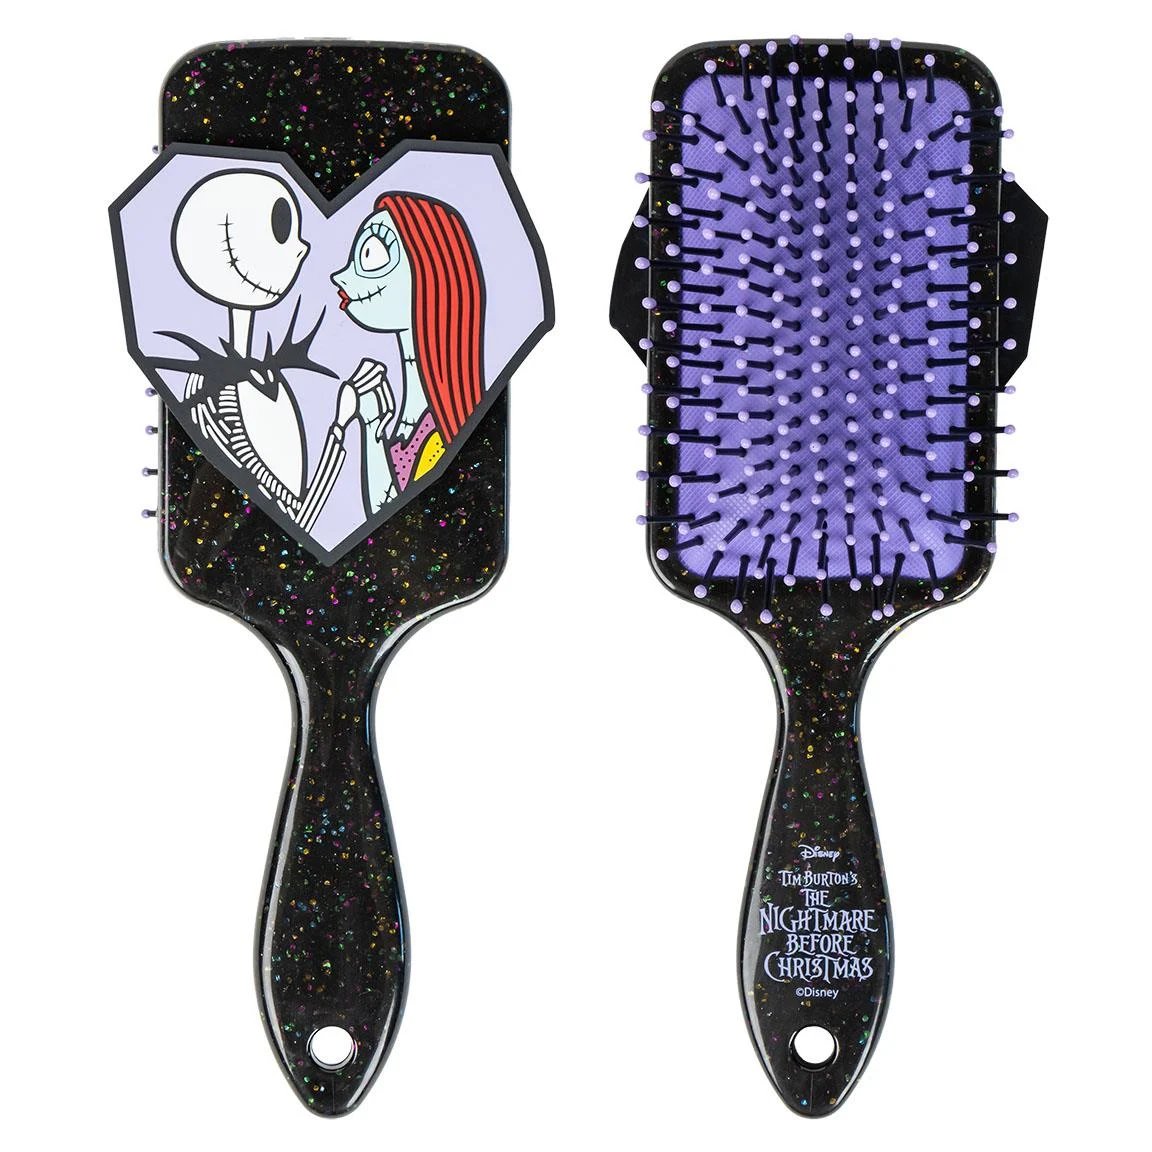 100% licensed hairbrush